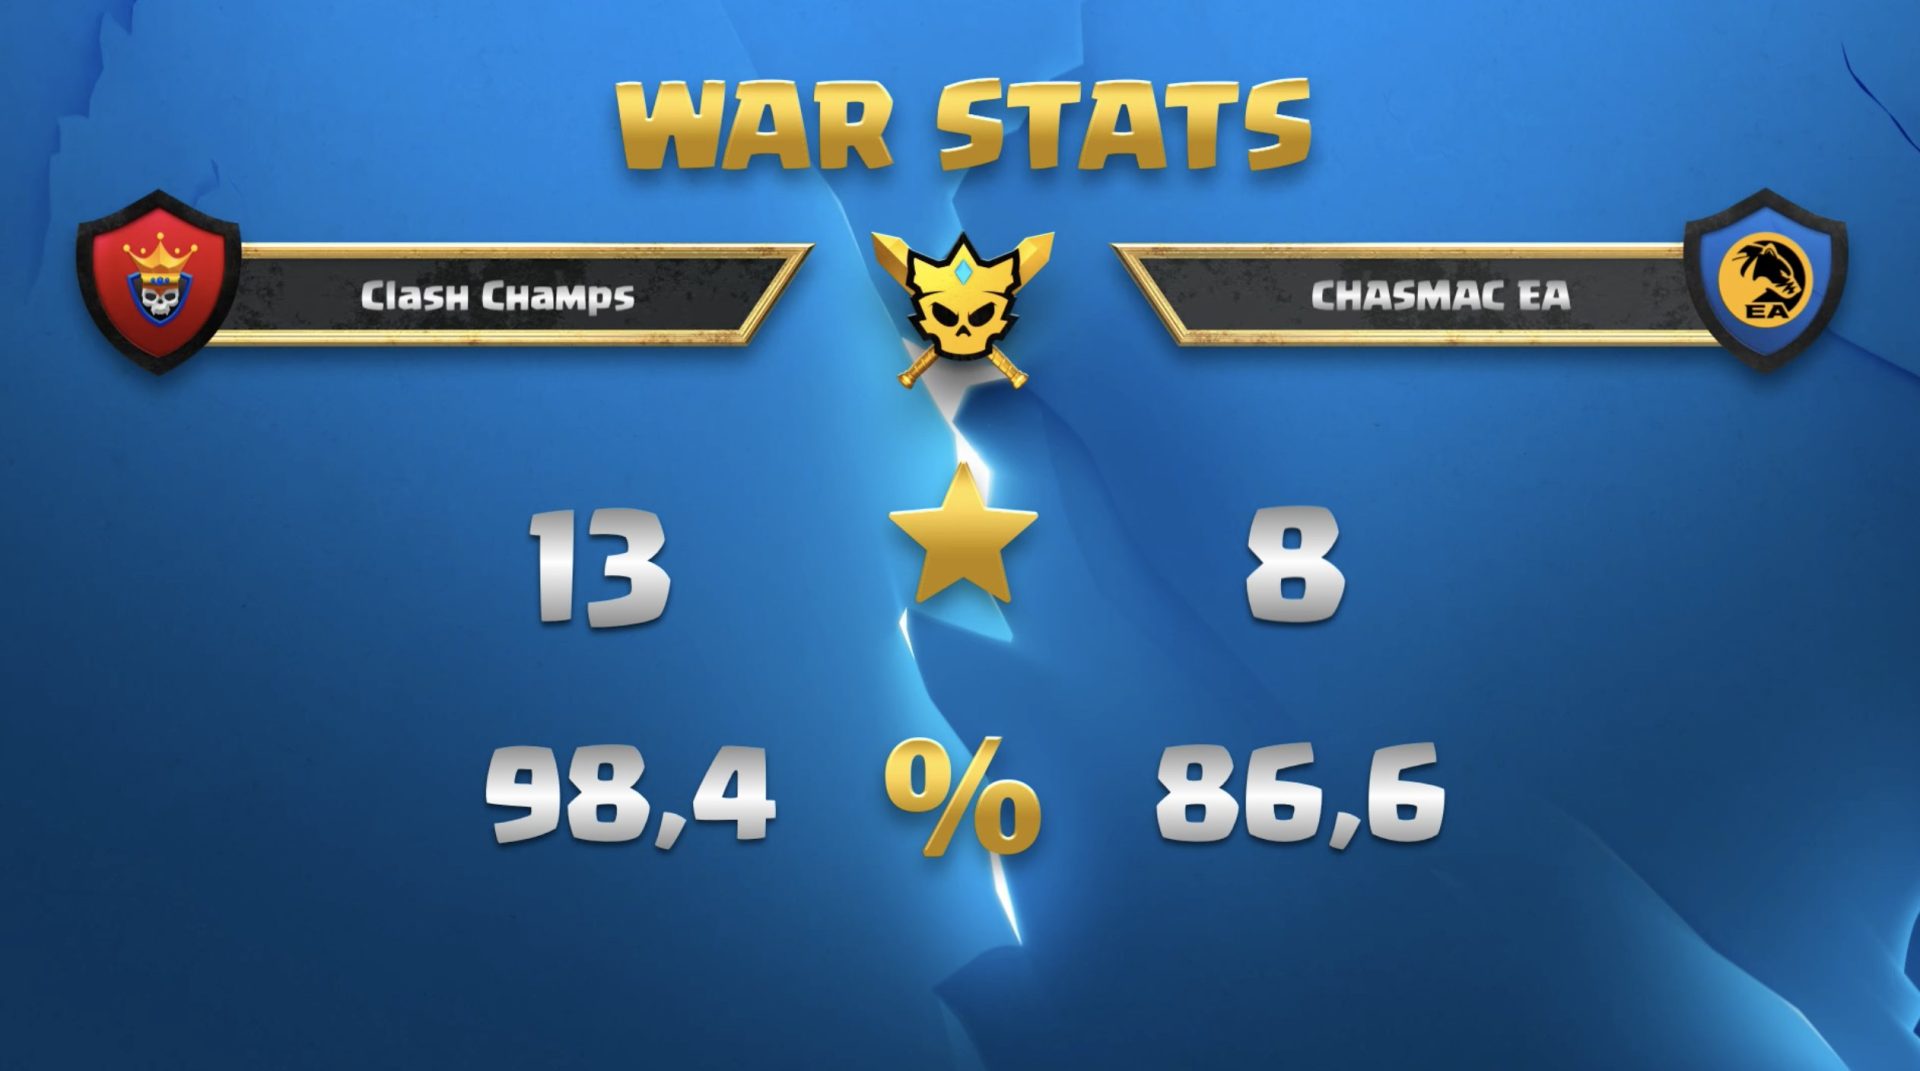 Clash Champs versus Chasmac EA